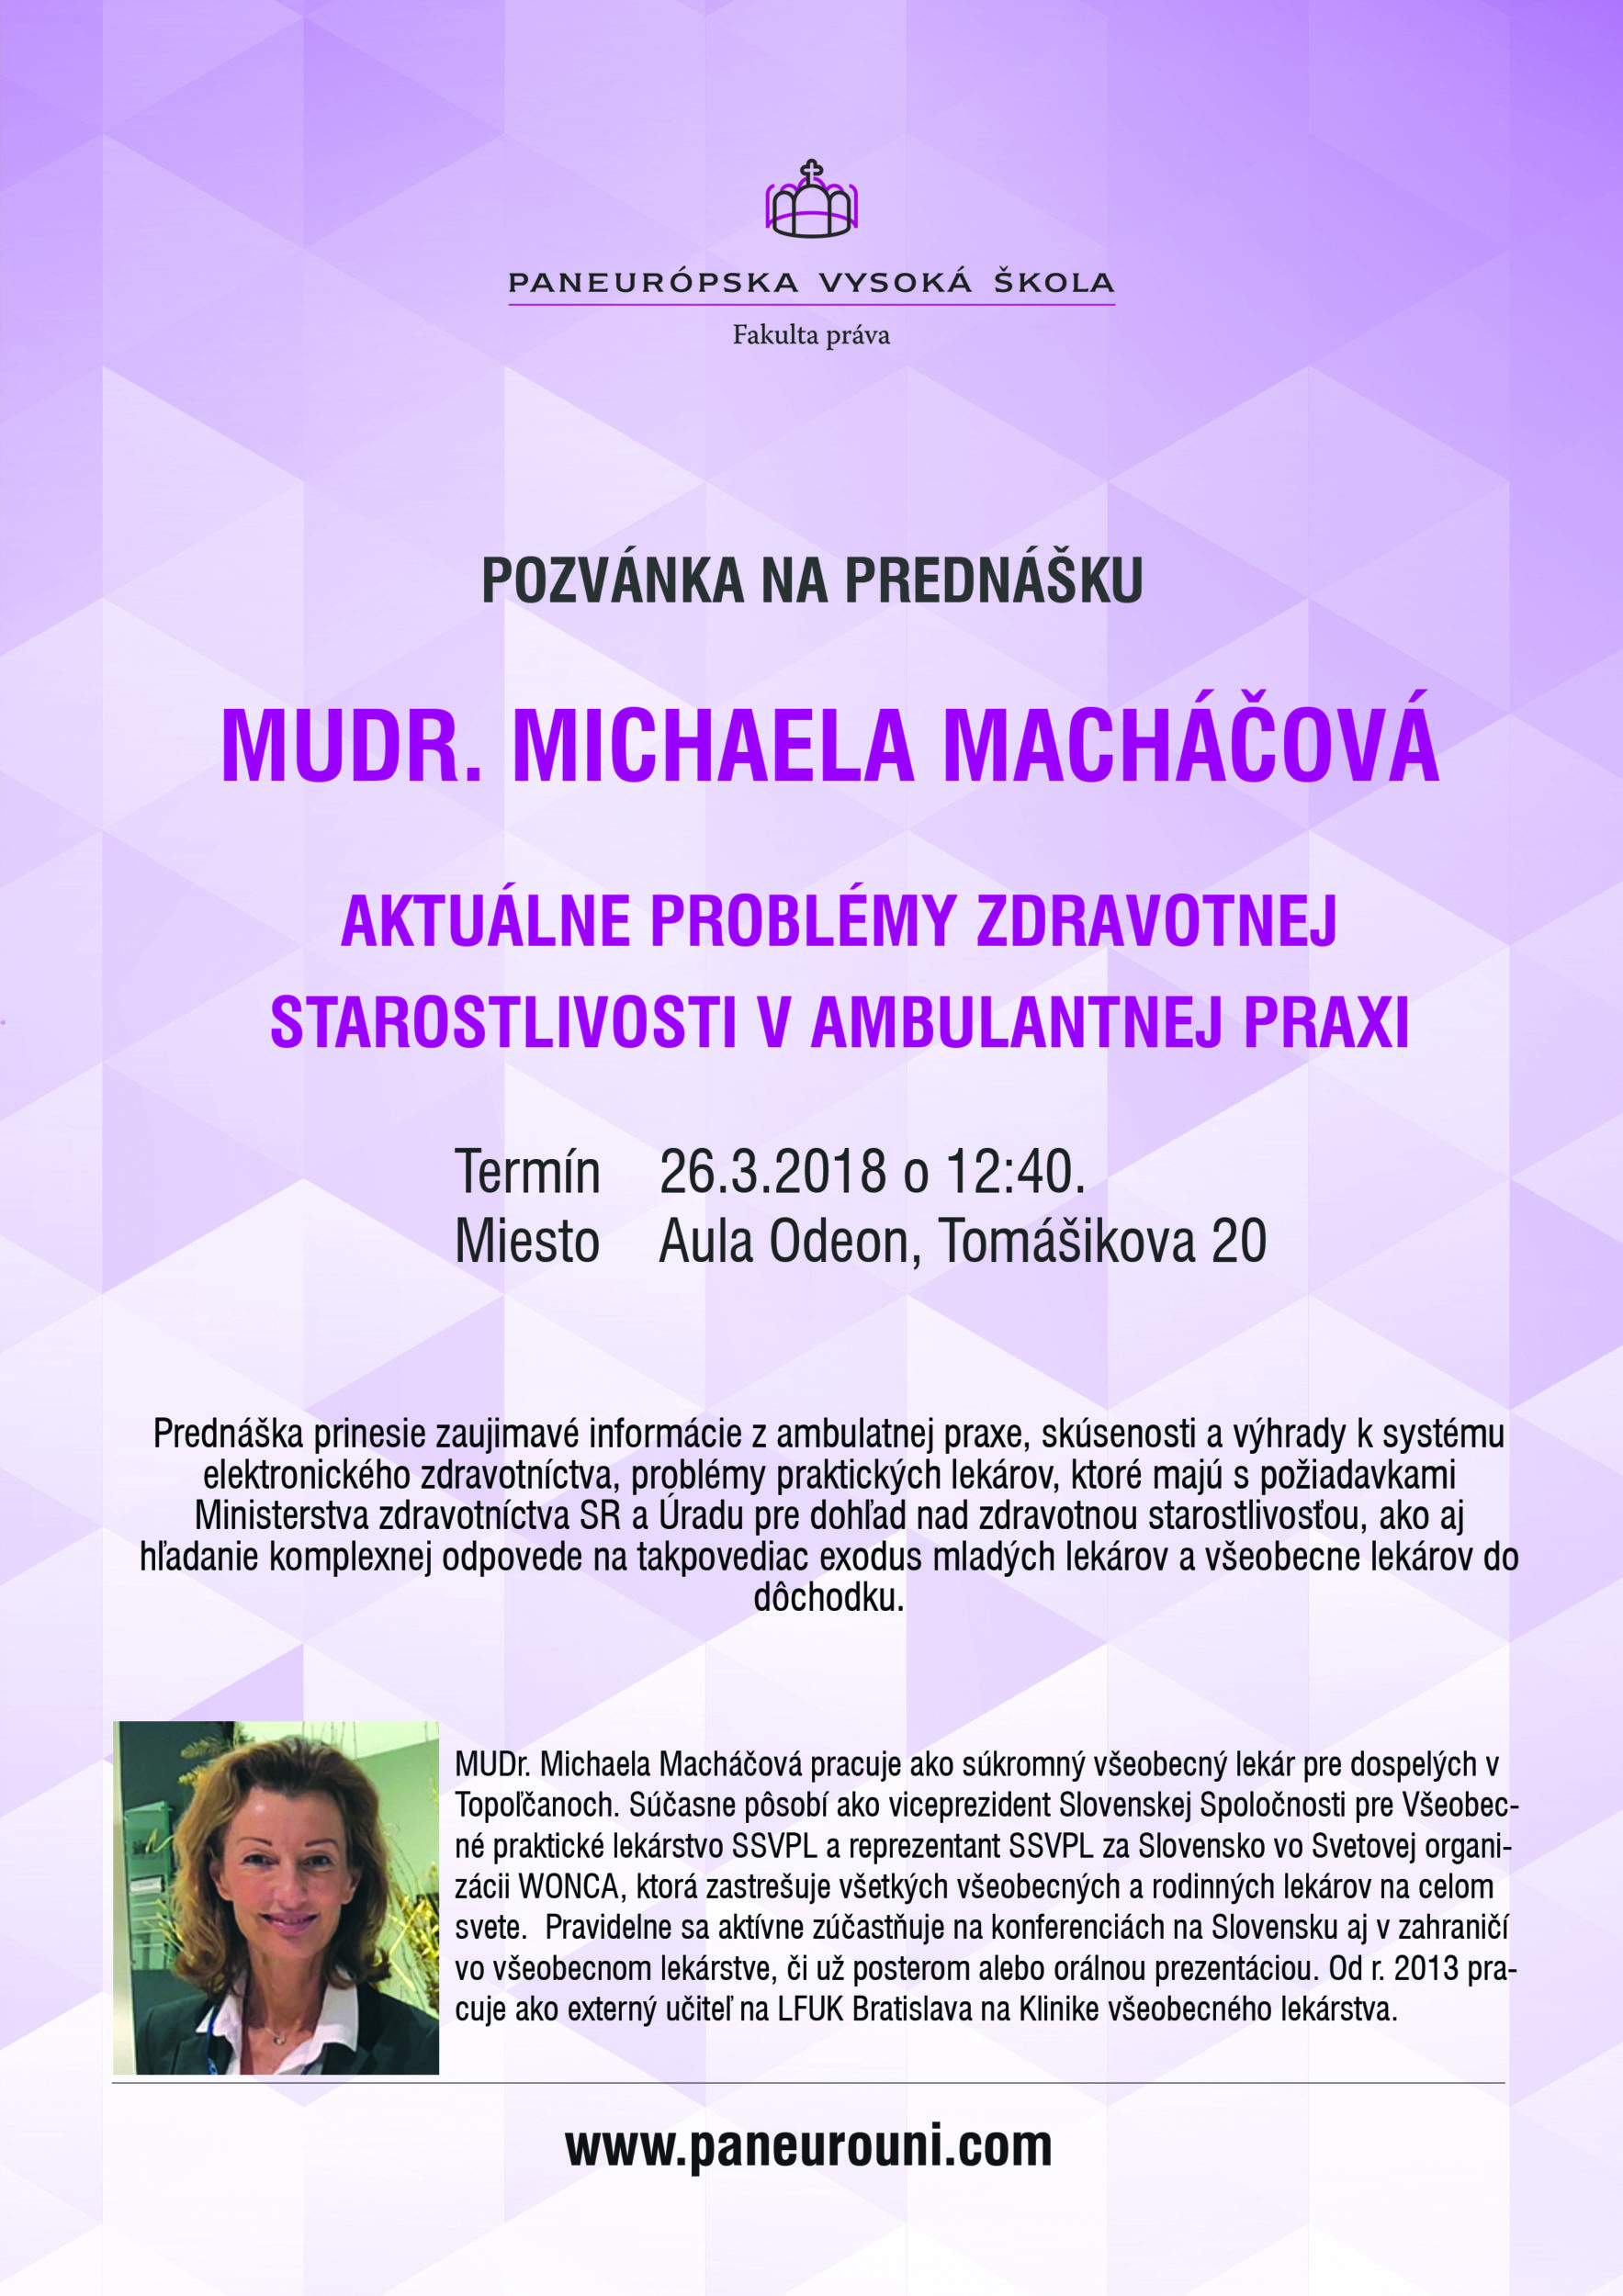 Michaela Macháčová prednáša na FP PEVŠ o zdravotnej starostlivosti